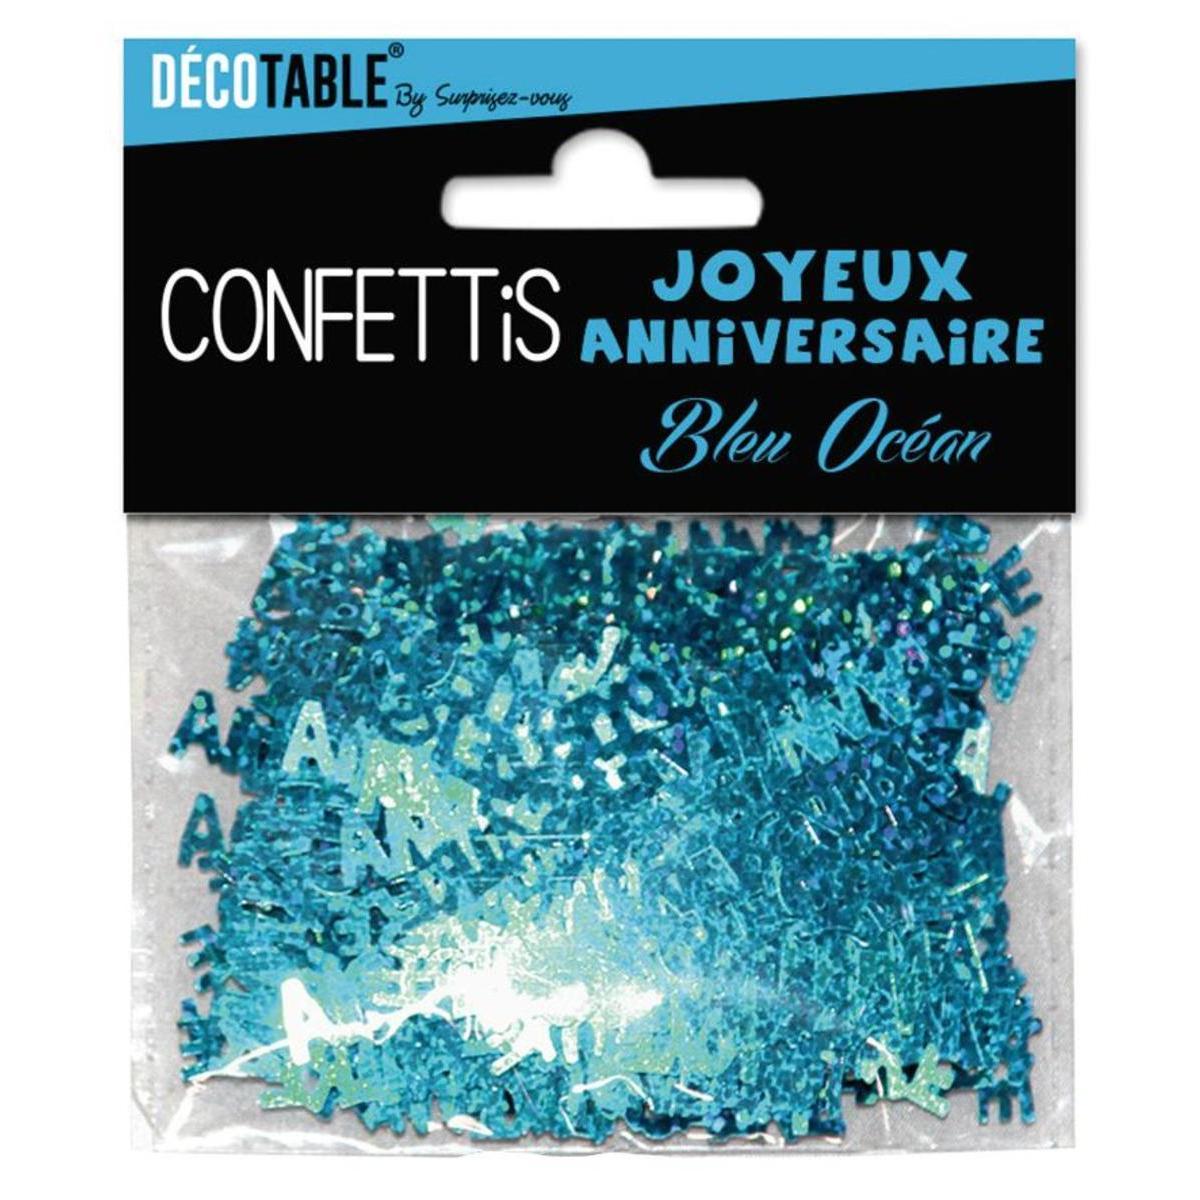 Confettis joyeux anniversaire bleu océan